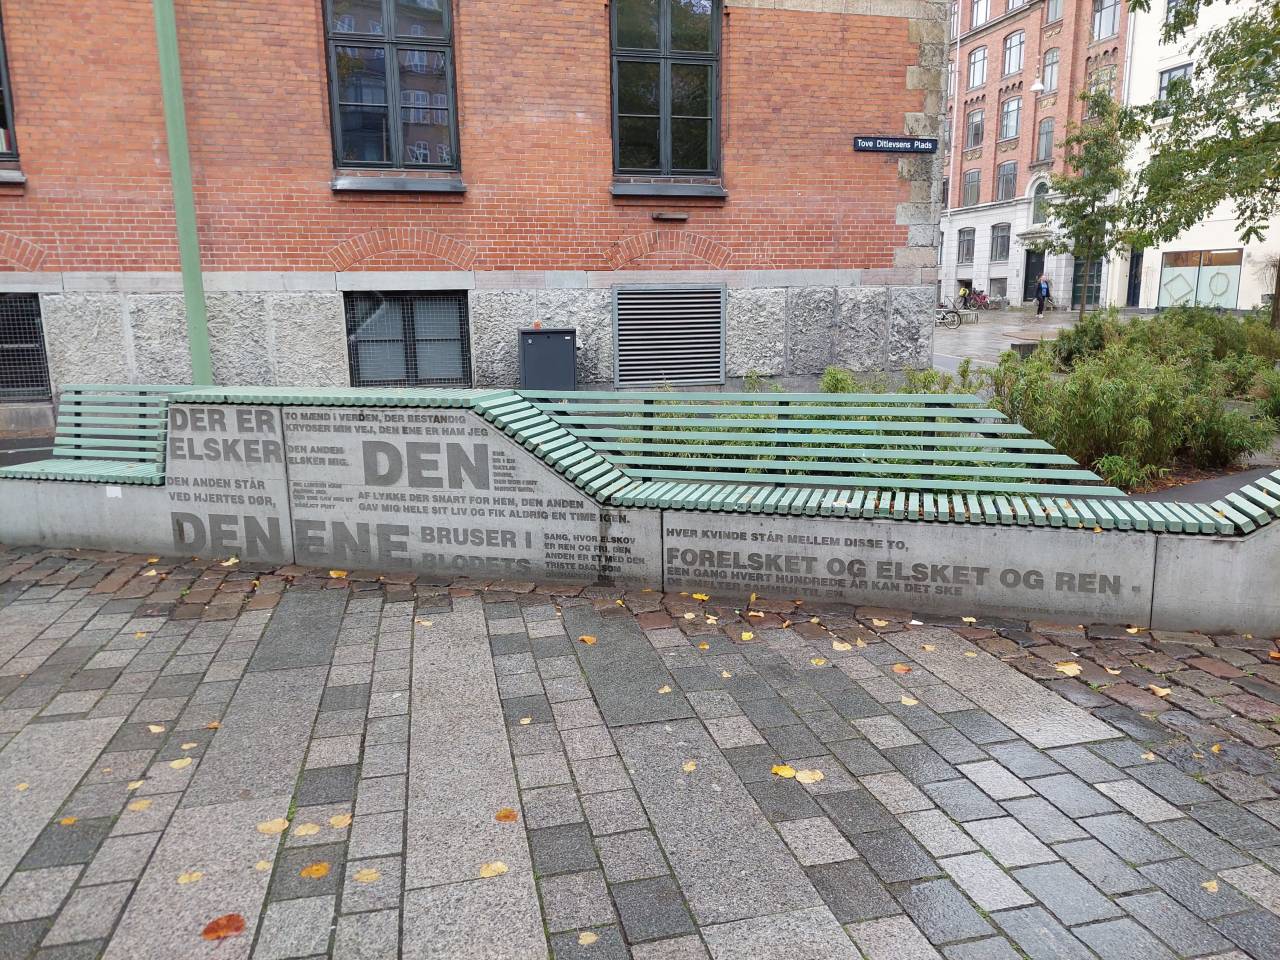 托芙．迪特萊弗森（Tove Ditlevsen）在丹麥是家喻戶曉的國民作家，照片是「托芙．迪特萊弗森」廣場（Tove Ditlevsen Plads），石凳上刻印著她的詩作。@照片提供：吳岫穎（哥本哈根三部曲譯者，現居哥本哈根）